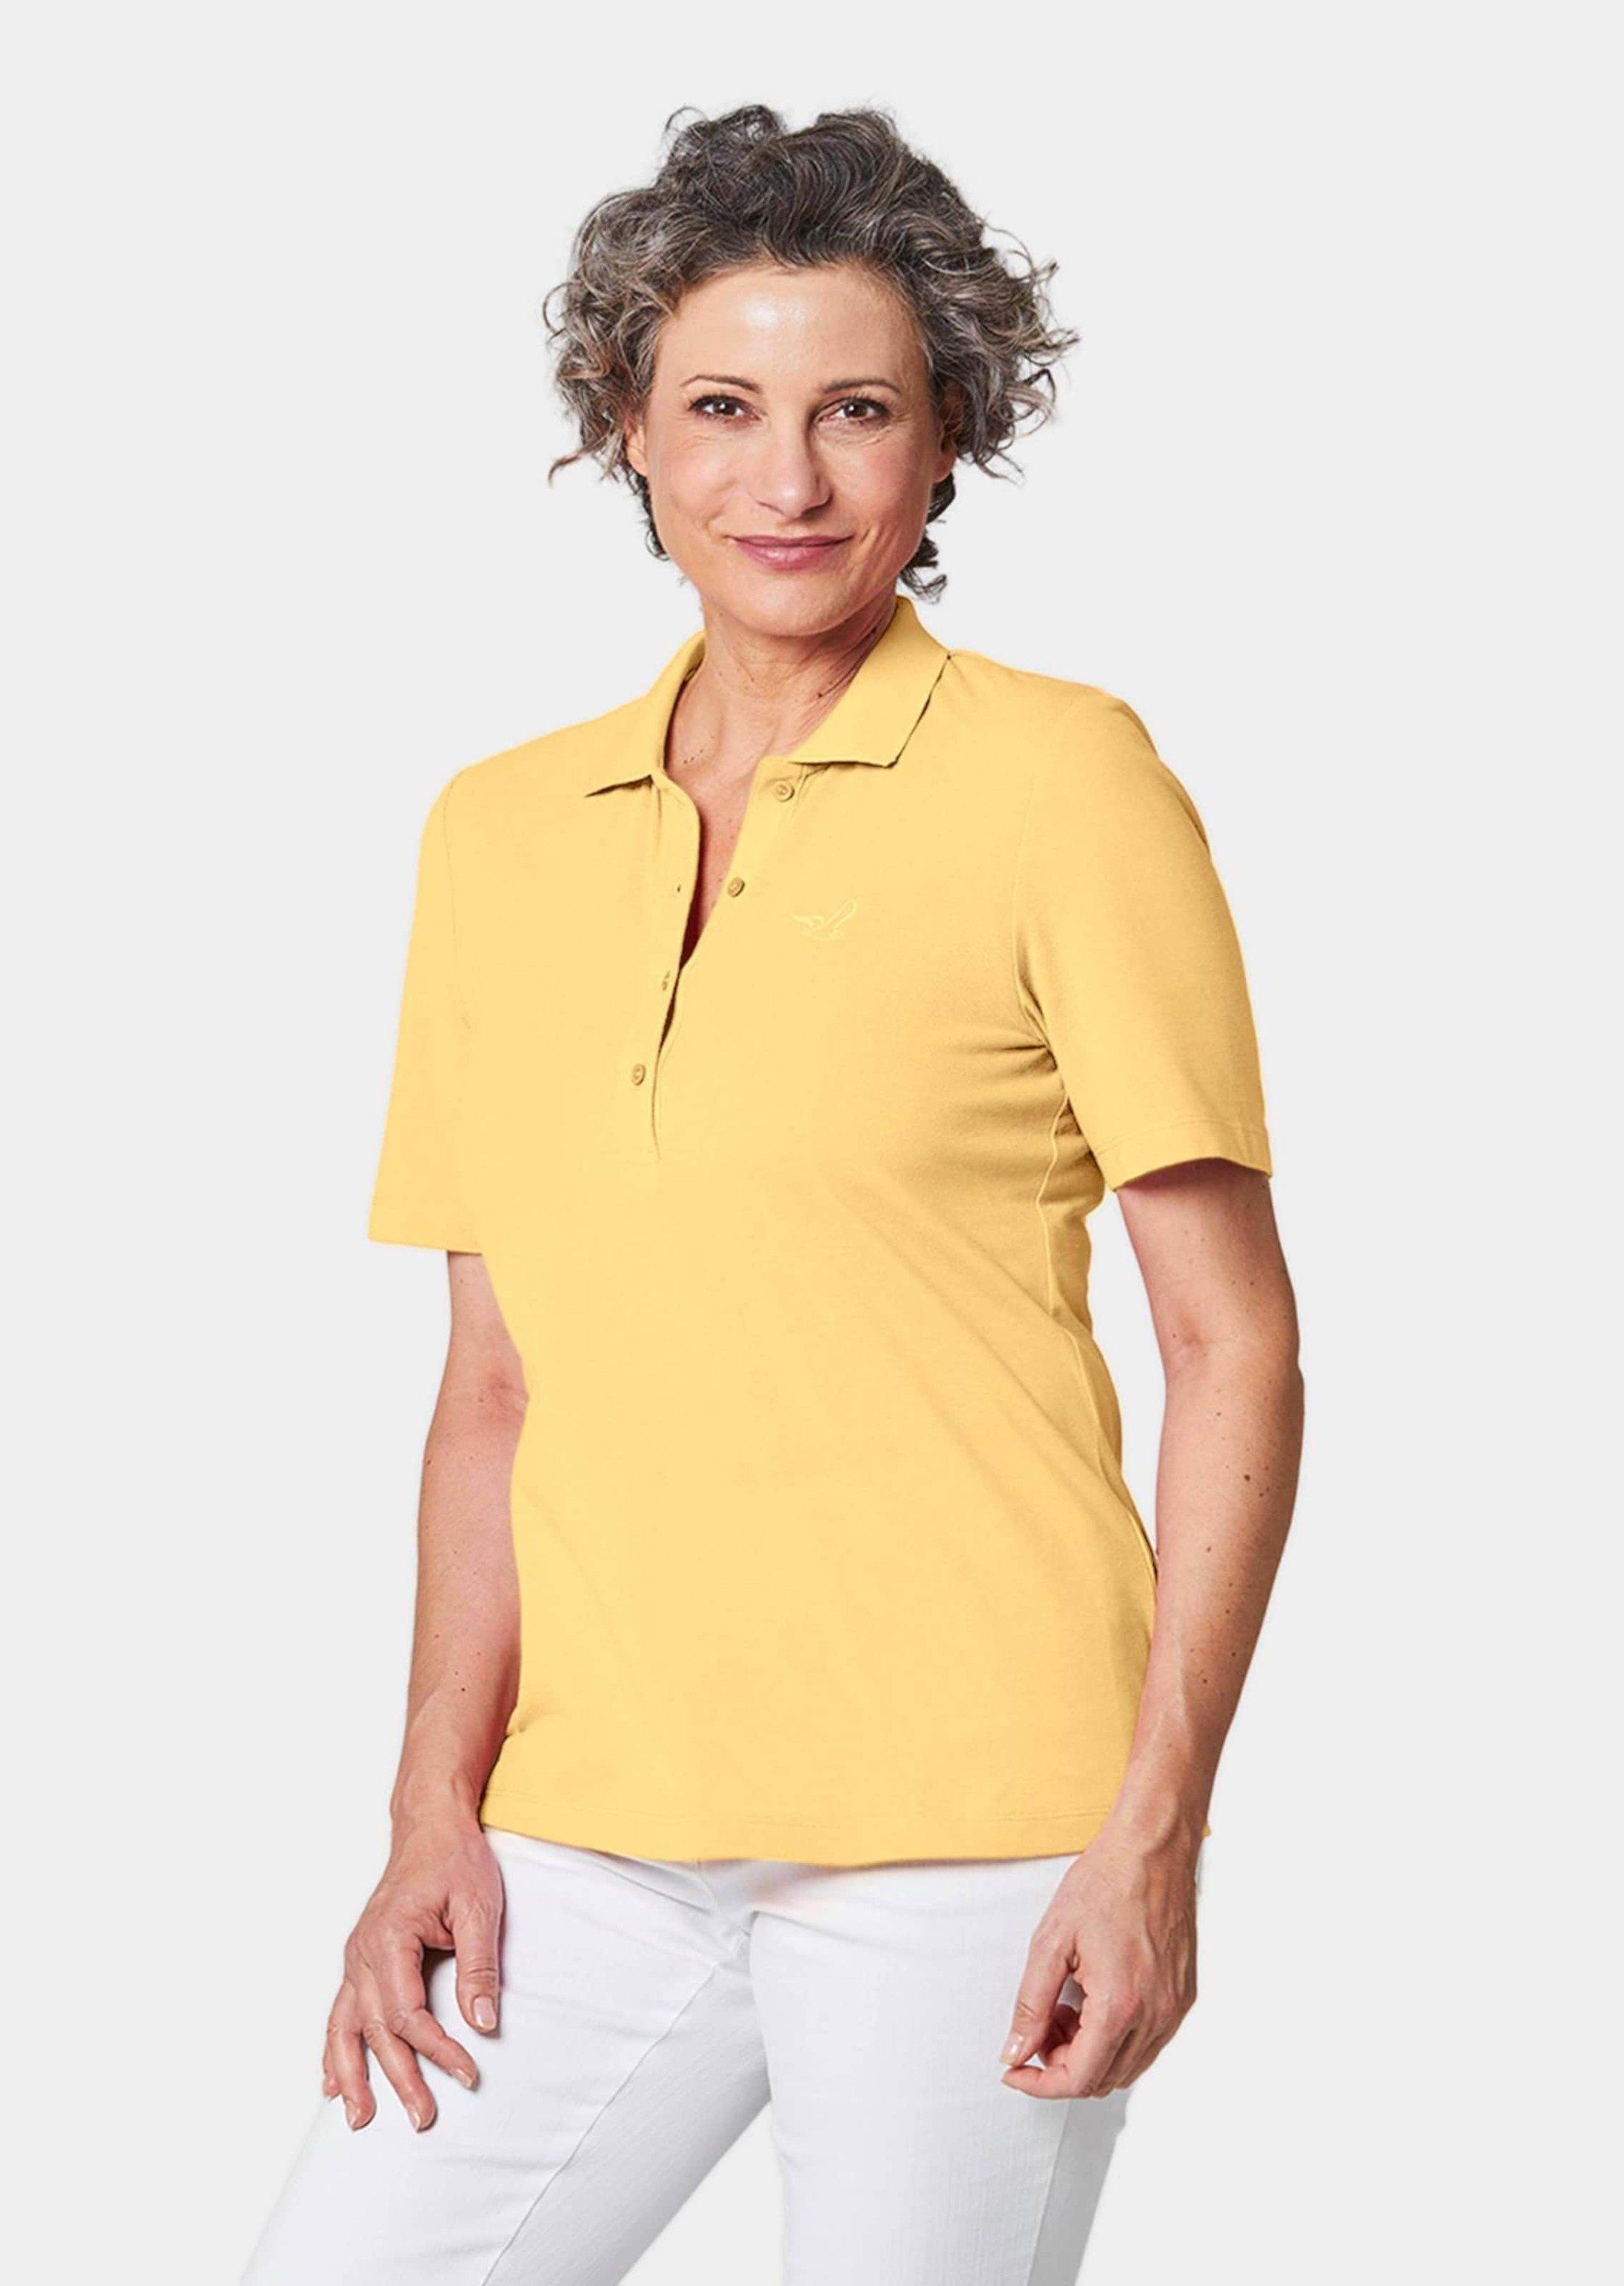 GOLDNER Poloshirt Poloshirt in hochwertiger Pikee-Qualität